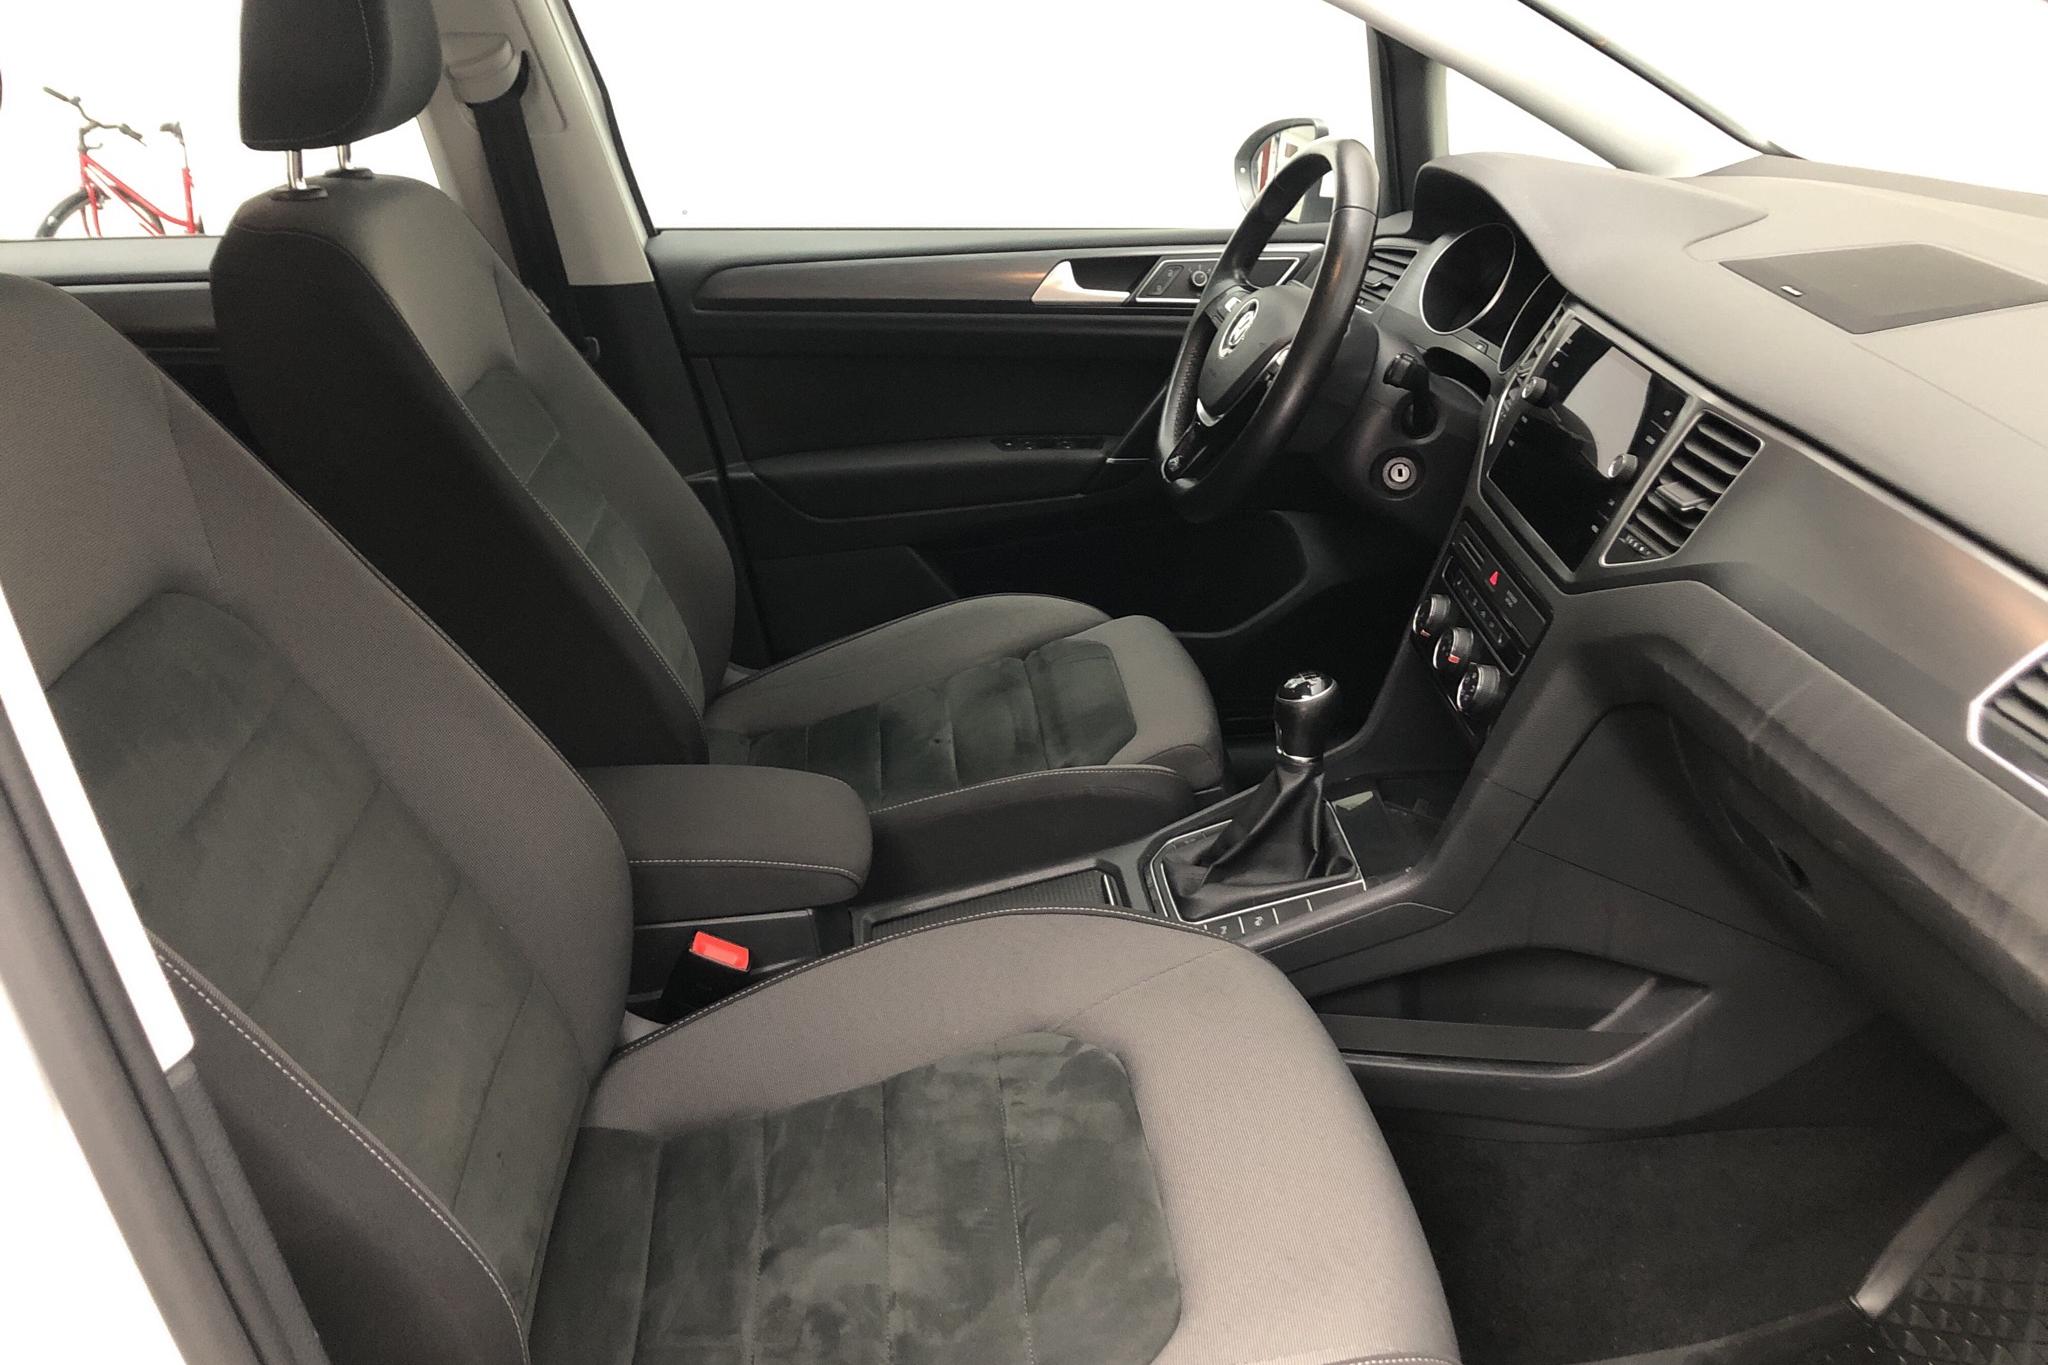 VW Golf VII 1.2 TSI Sportsvan (110hk) - 151 880 km - Manual - white - 2018